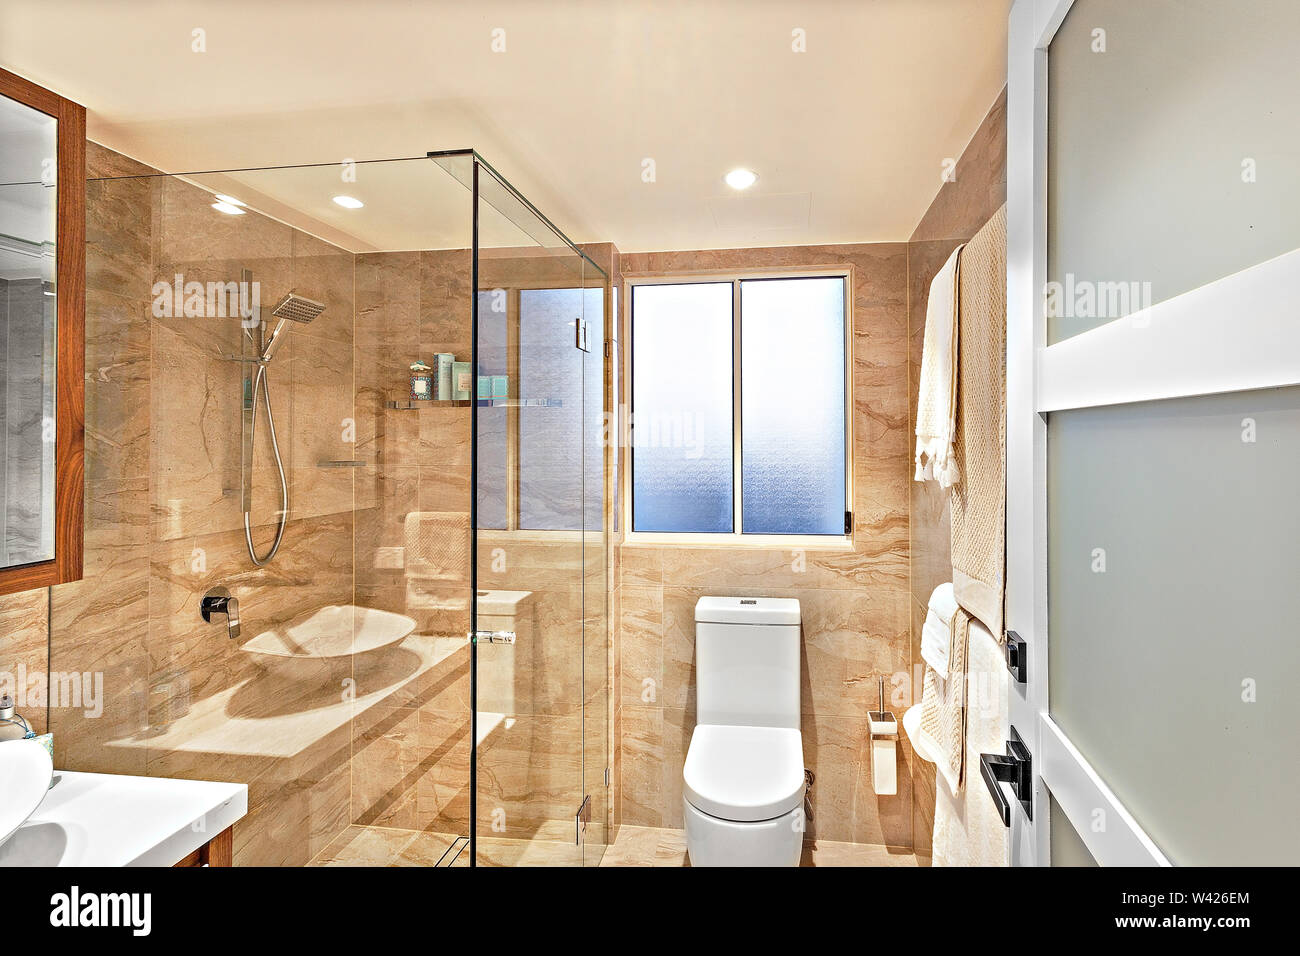 Un moderno cuarto de baño con una ducha separada con cristal, una zona de  aseo, toallas y perchas Fotografía de stock - Alamy